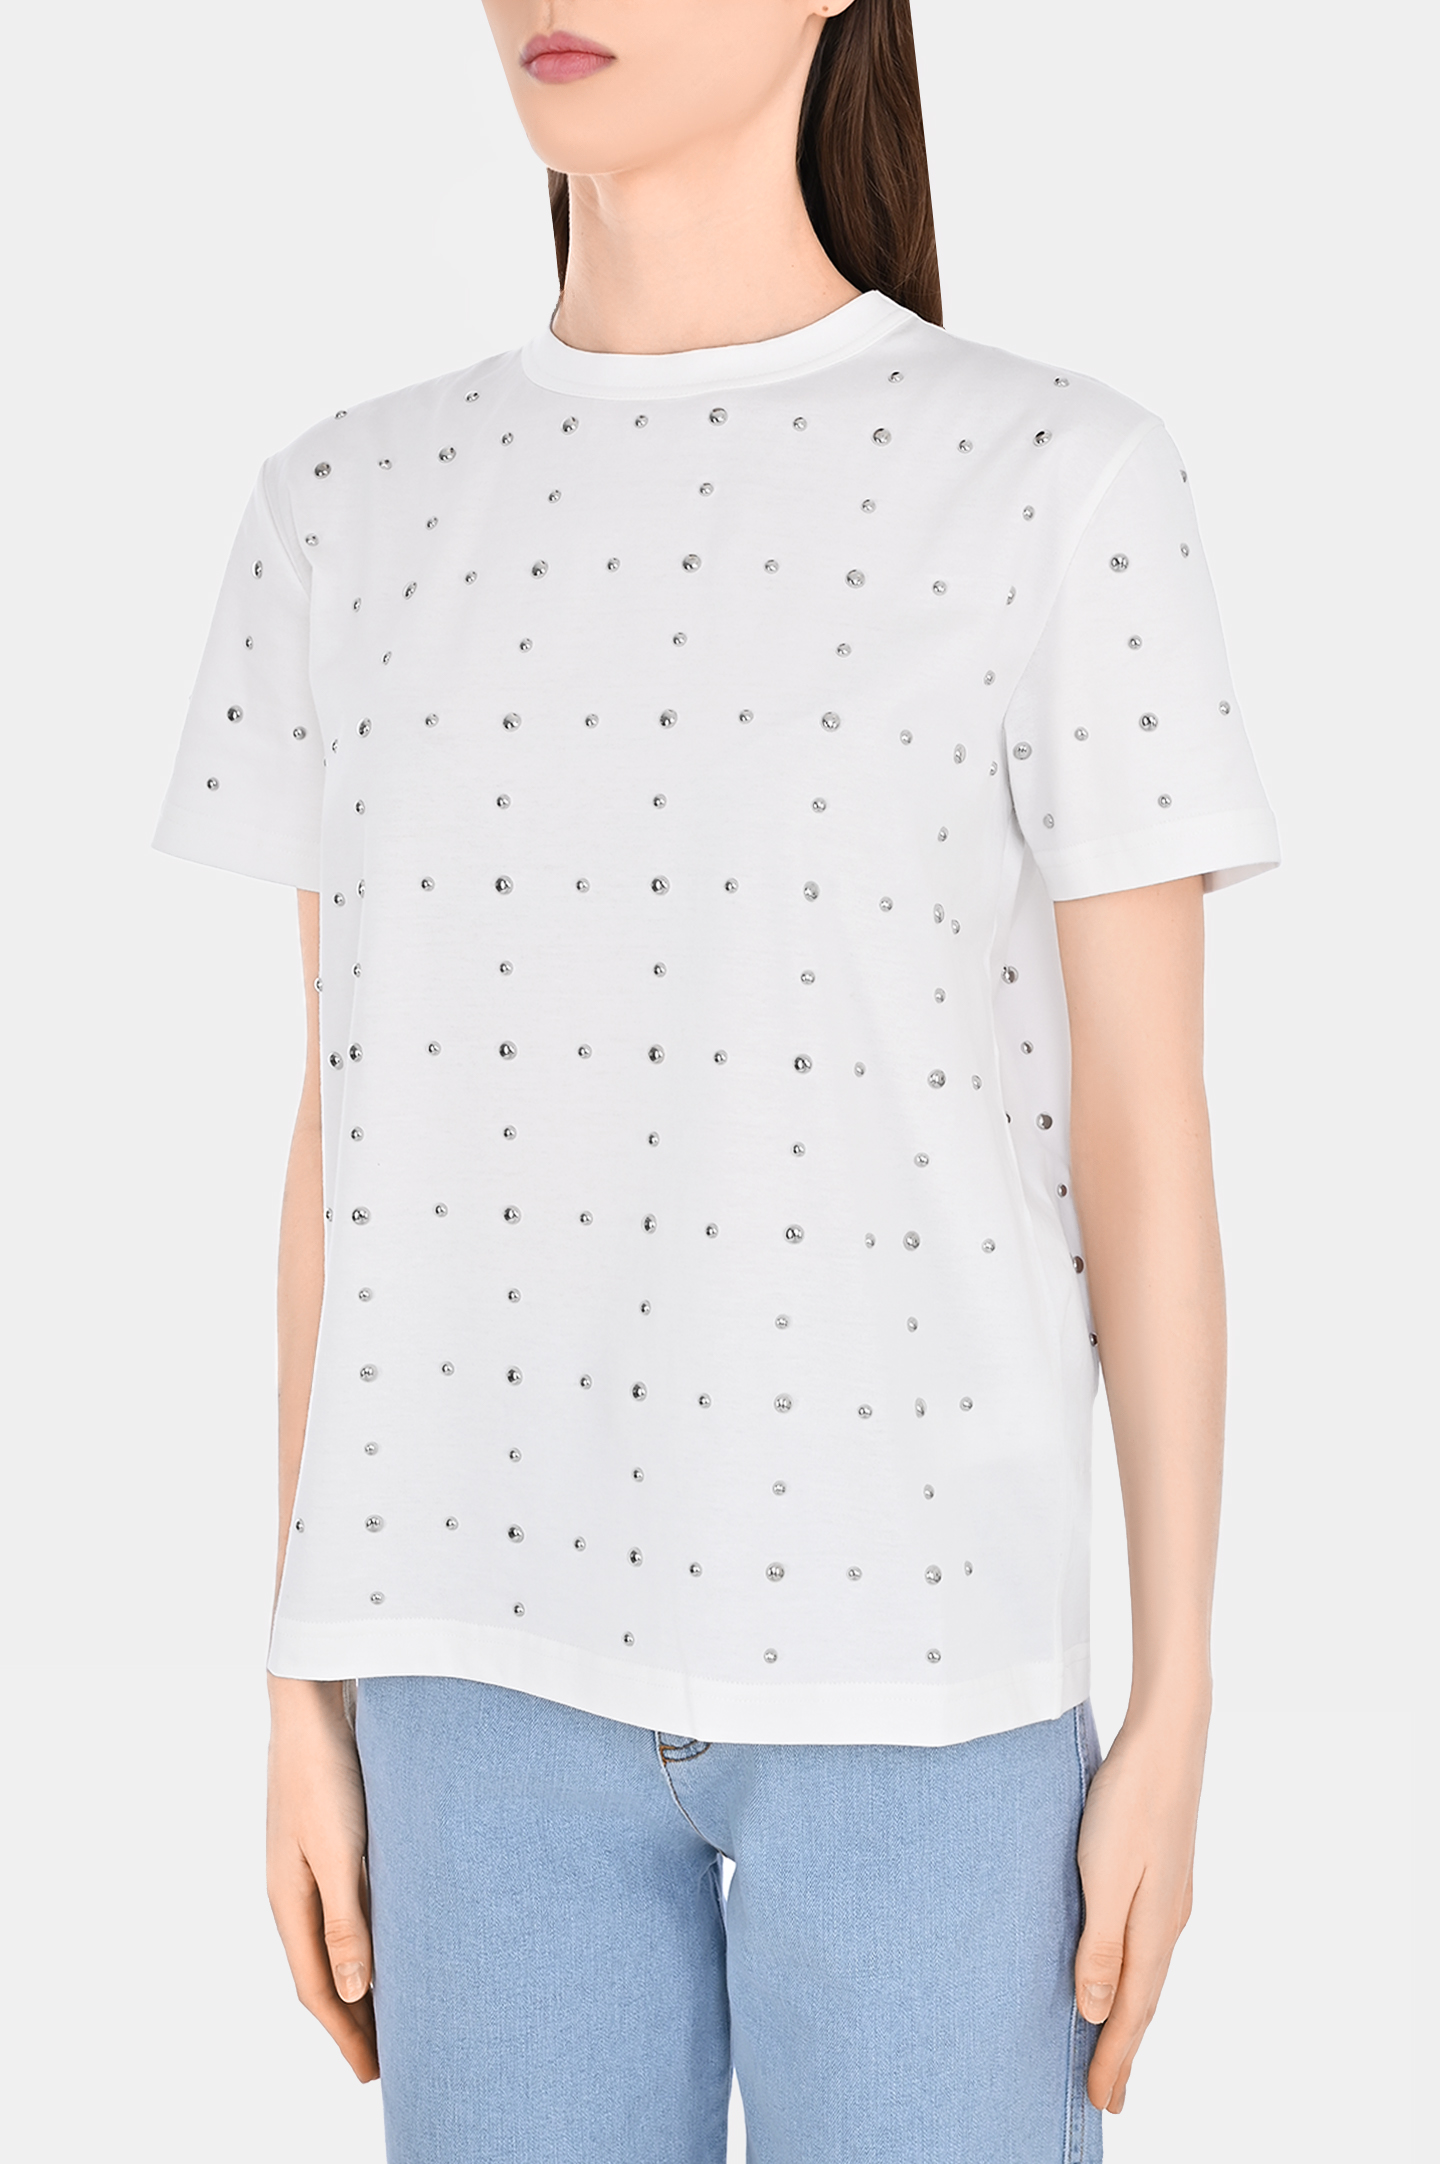 Хлоковая футболка со стразами FABIANA FILIPPI JED274F445H484, цвет: Белый, Женский